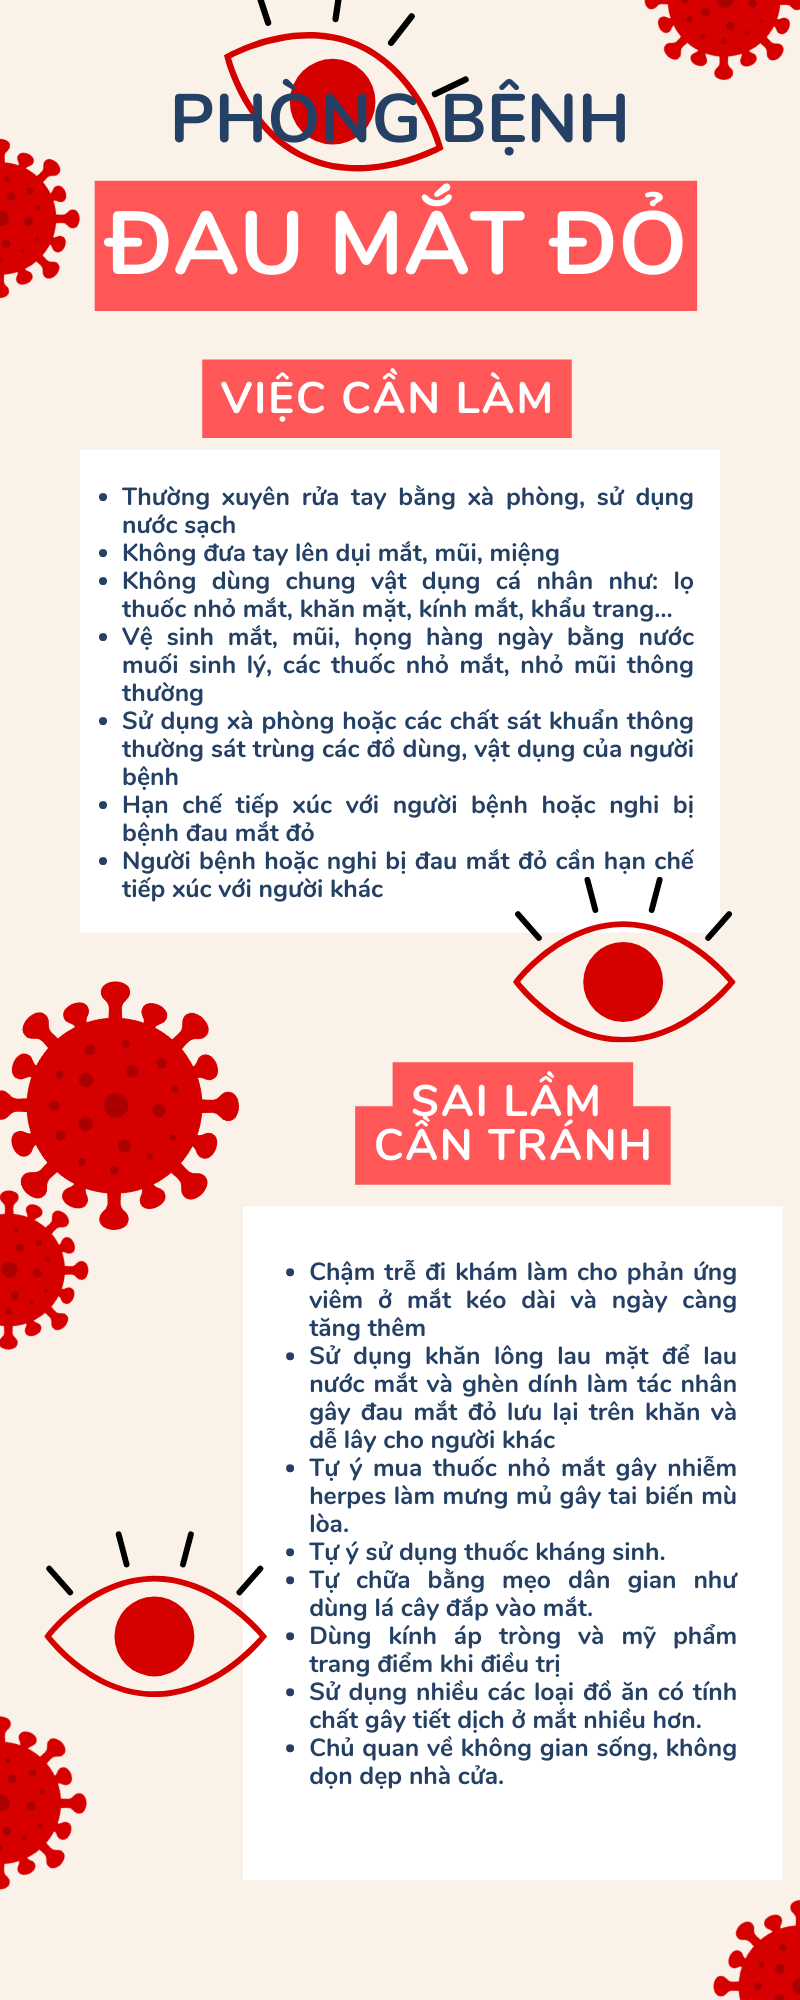 Bệnh đau mắt đỏ lây lan: Việc cần làm và việc cần tránh - Ảnh 2.